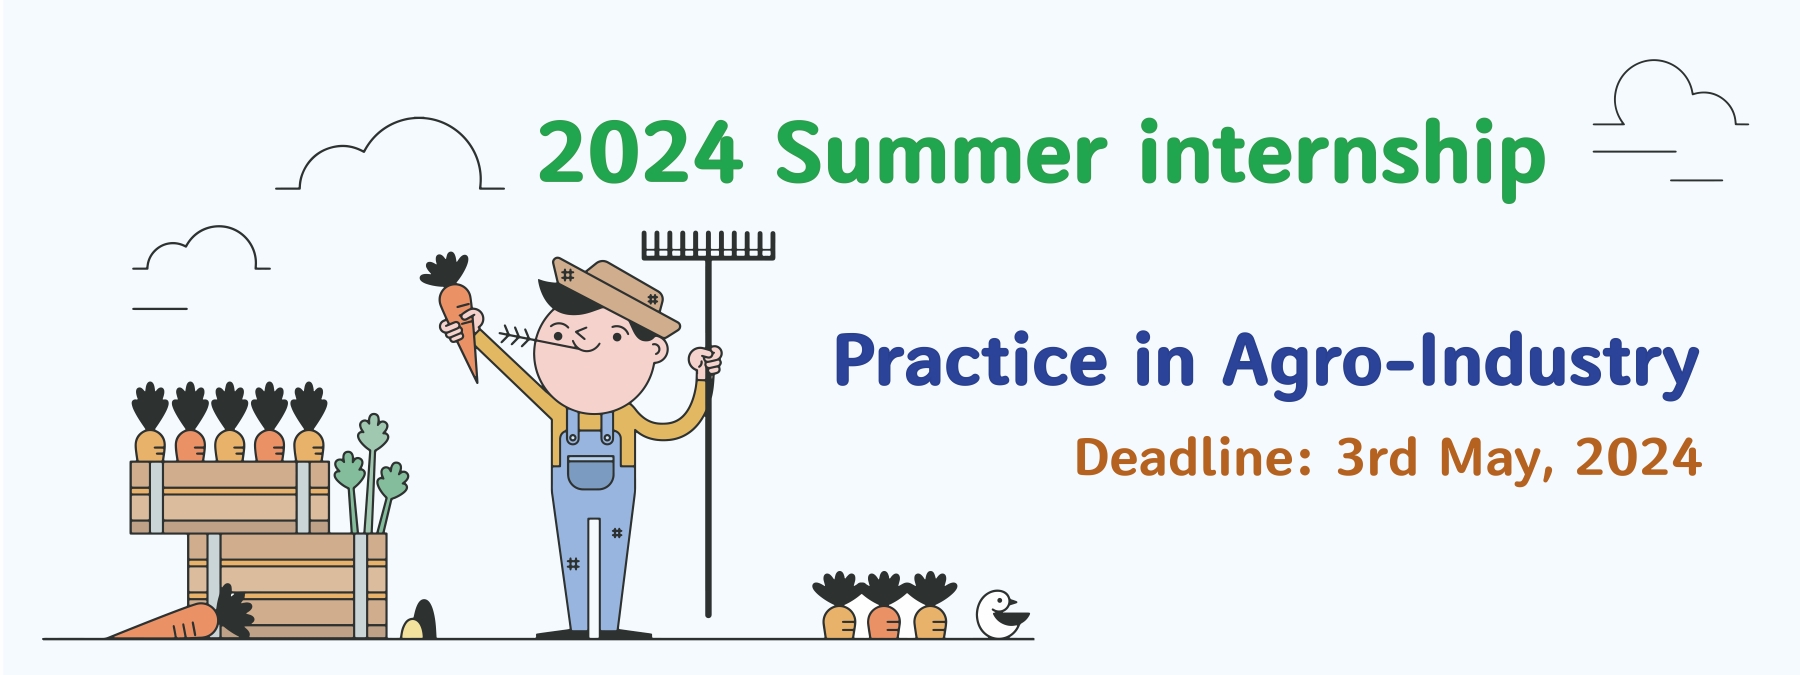 2024 Summer internship (Practice in Agro-Industry) registration